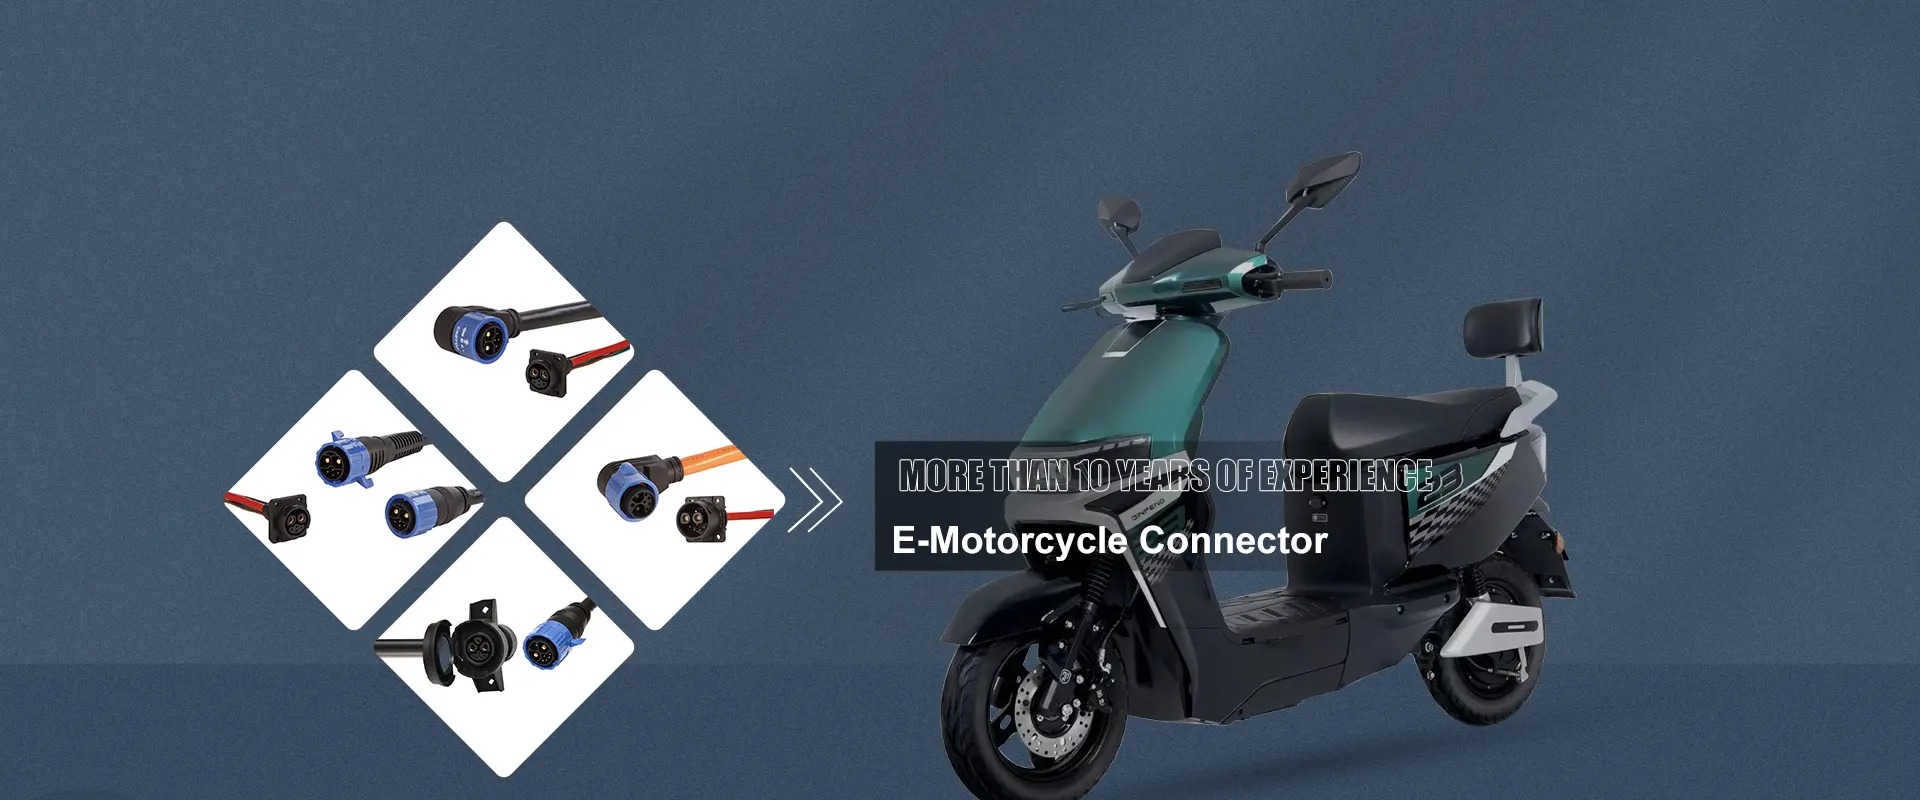 중국 전자 오토바이 커넥터 제조업체